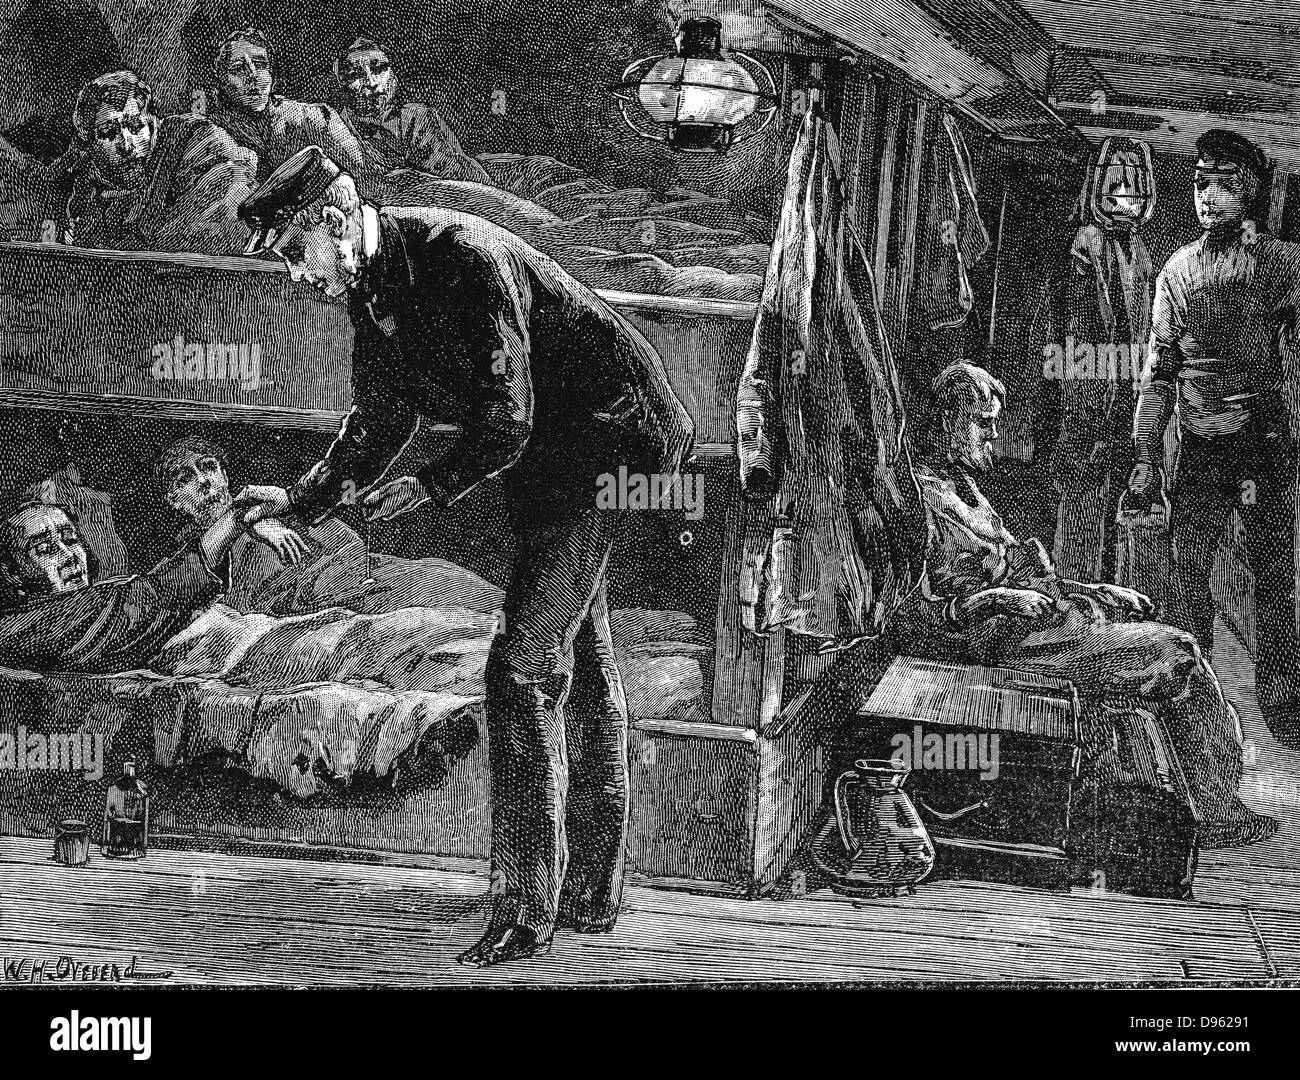 Am Puls eines kranken Irische Auswanderer an Bord für Nordamerika während der Hungersnot der 1840er Jahre gebunden. Holzstich c 1890. Stockfoto